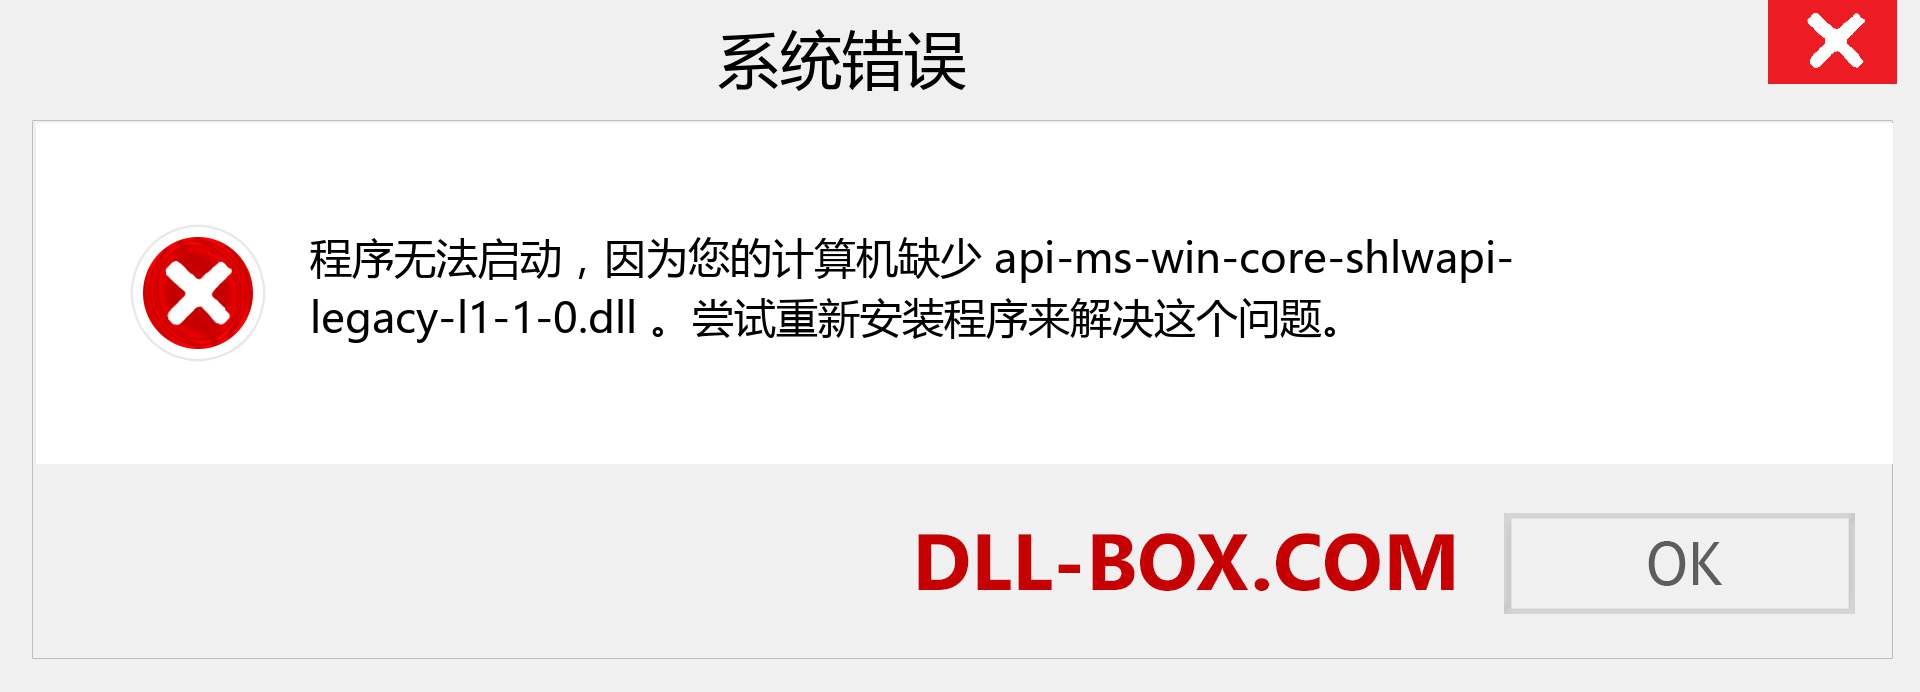 api-ms-win-core-shlwapi-legacy-l1-1-0.dll 文件丢失？。 适用于 Windows 7、8、10 的下载 - 修复 Windows、照片、图像上的 api-ms-win-core-shlwapi-legacy-l1-1-0 dll 丢失错误